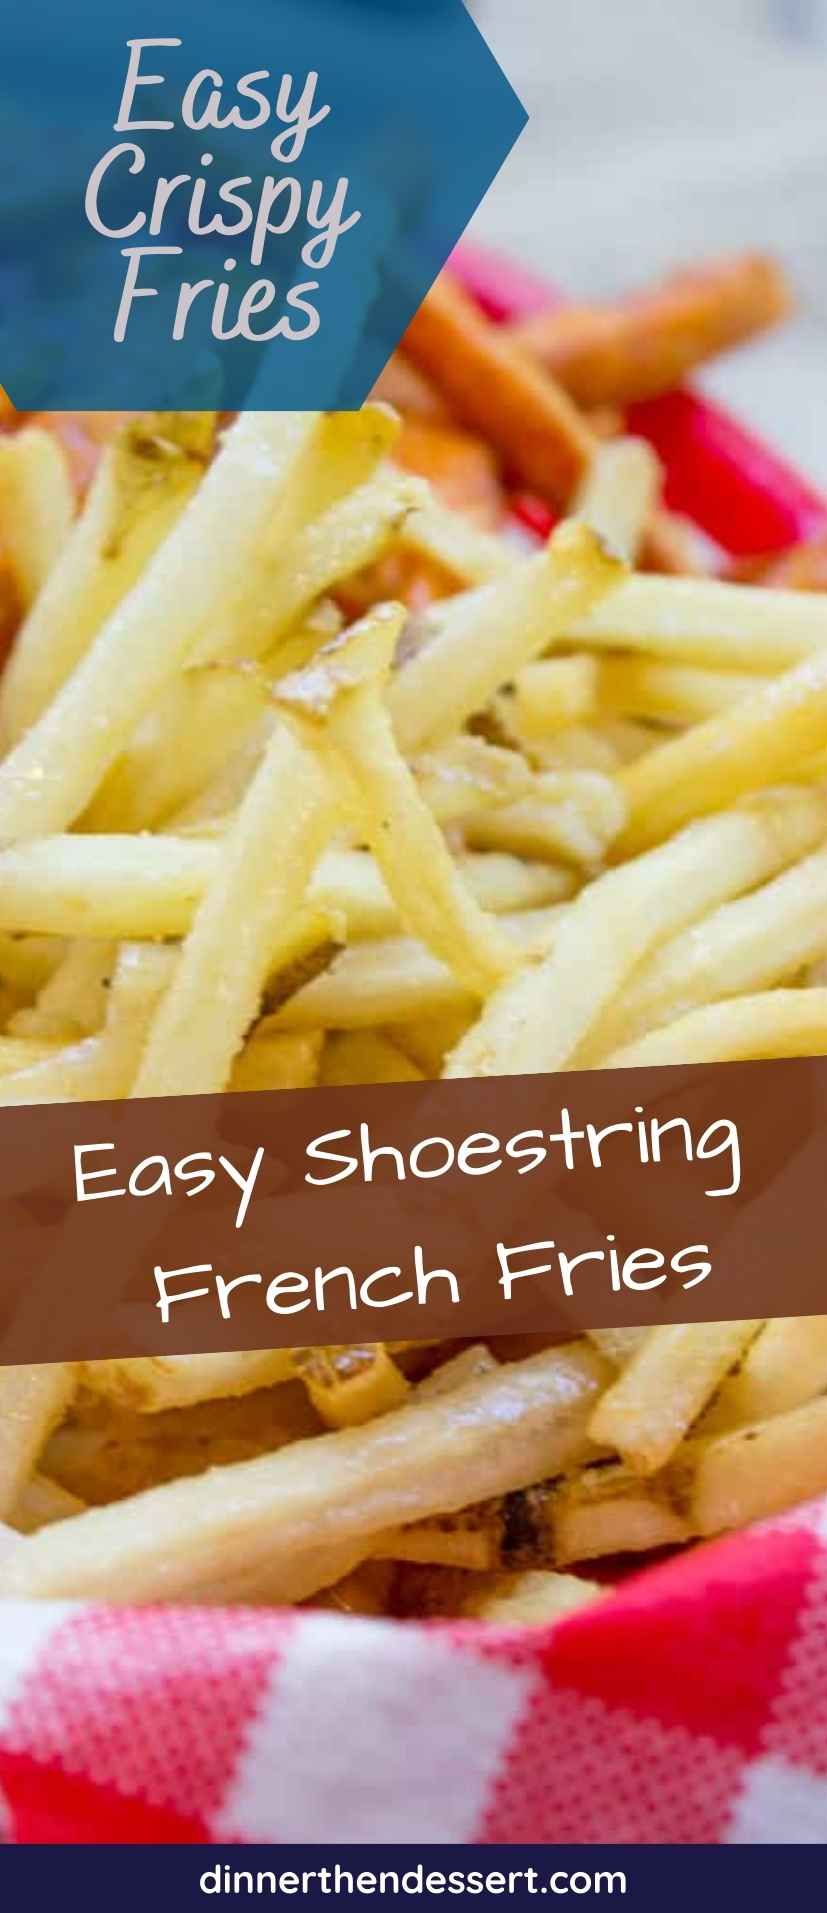 https://dinnerthendessert.com/wp-content/uploads/2016/06/Shoestring-French-Fries-Pin-1.jpg